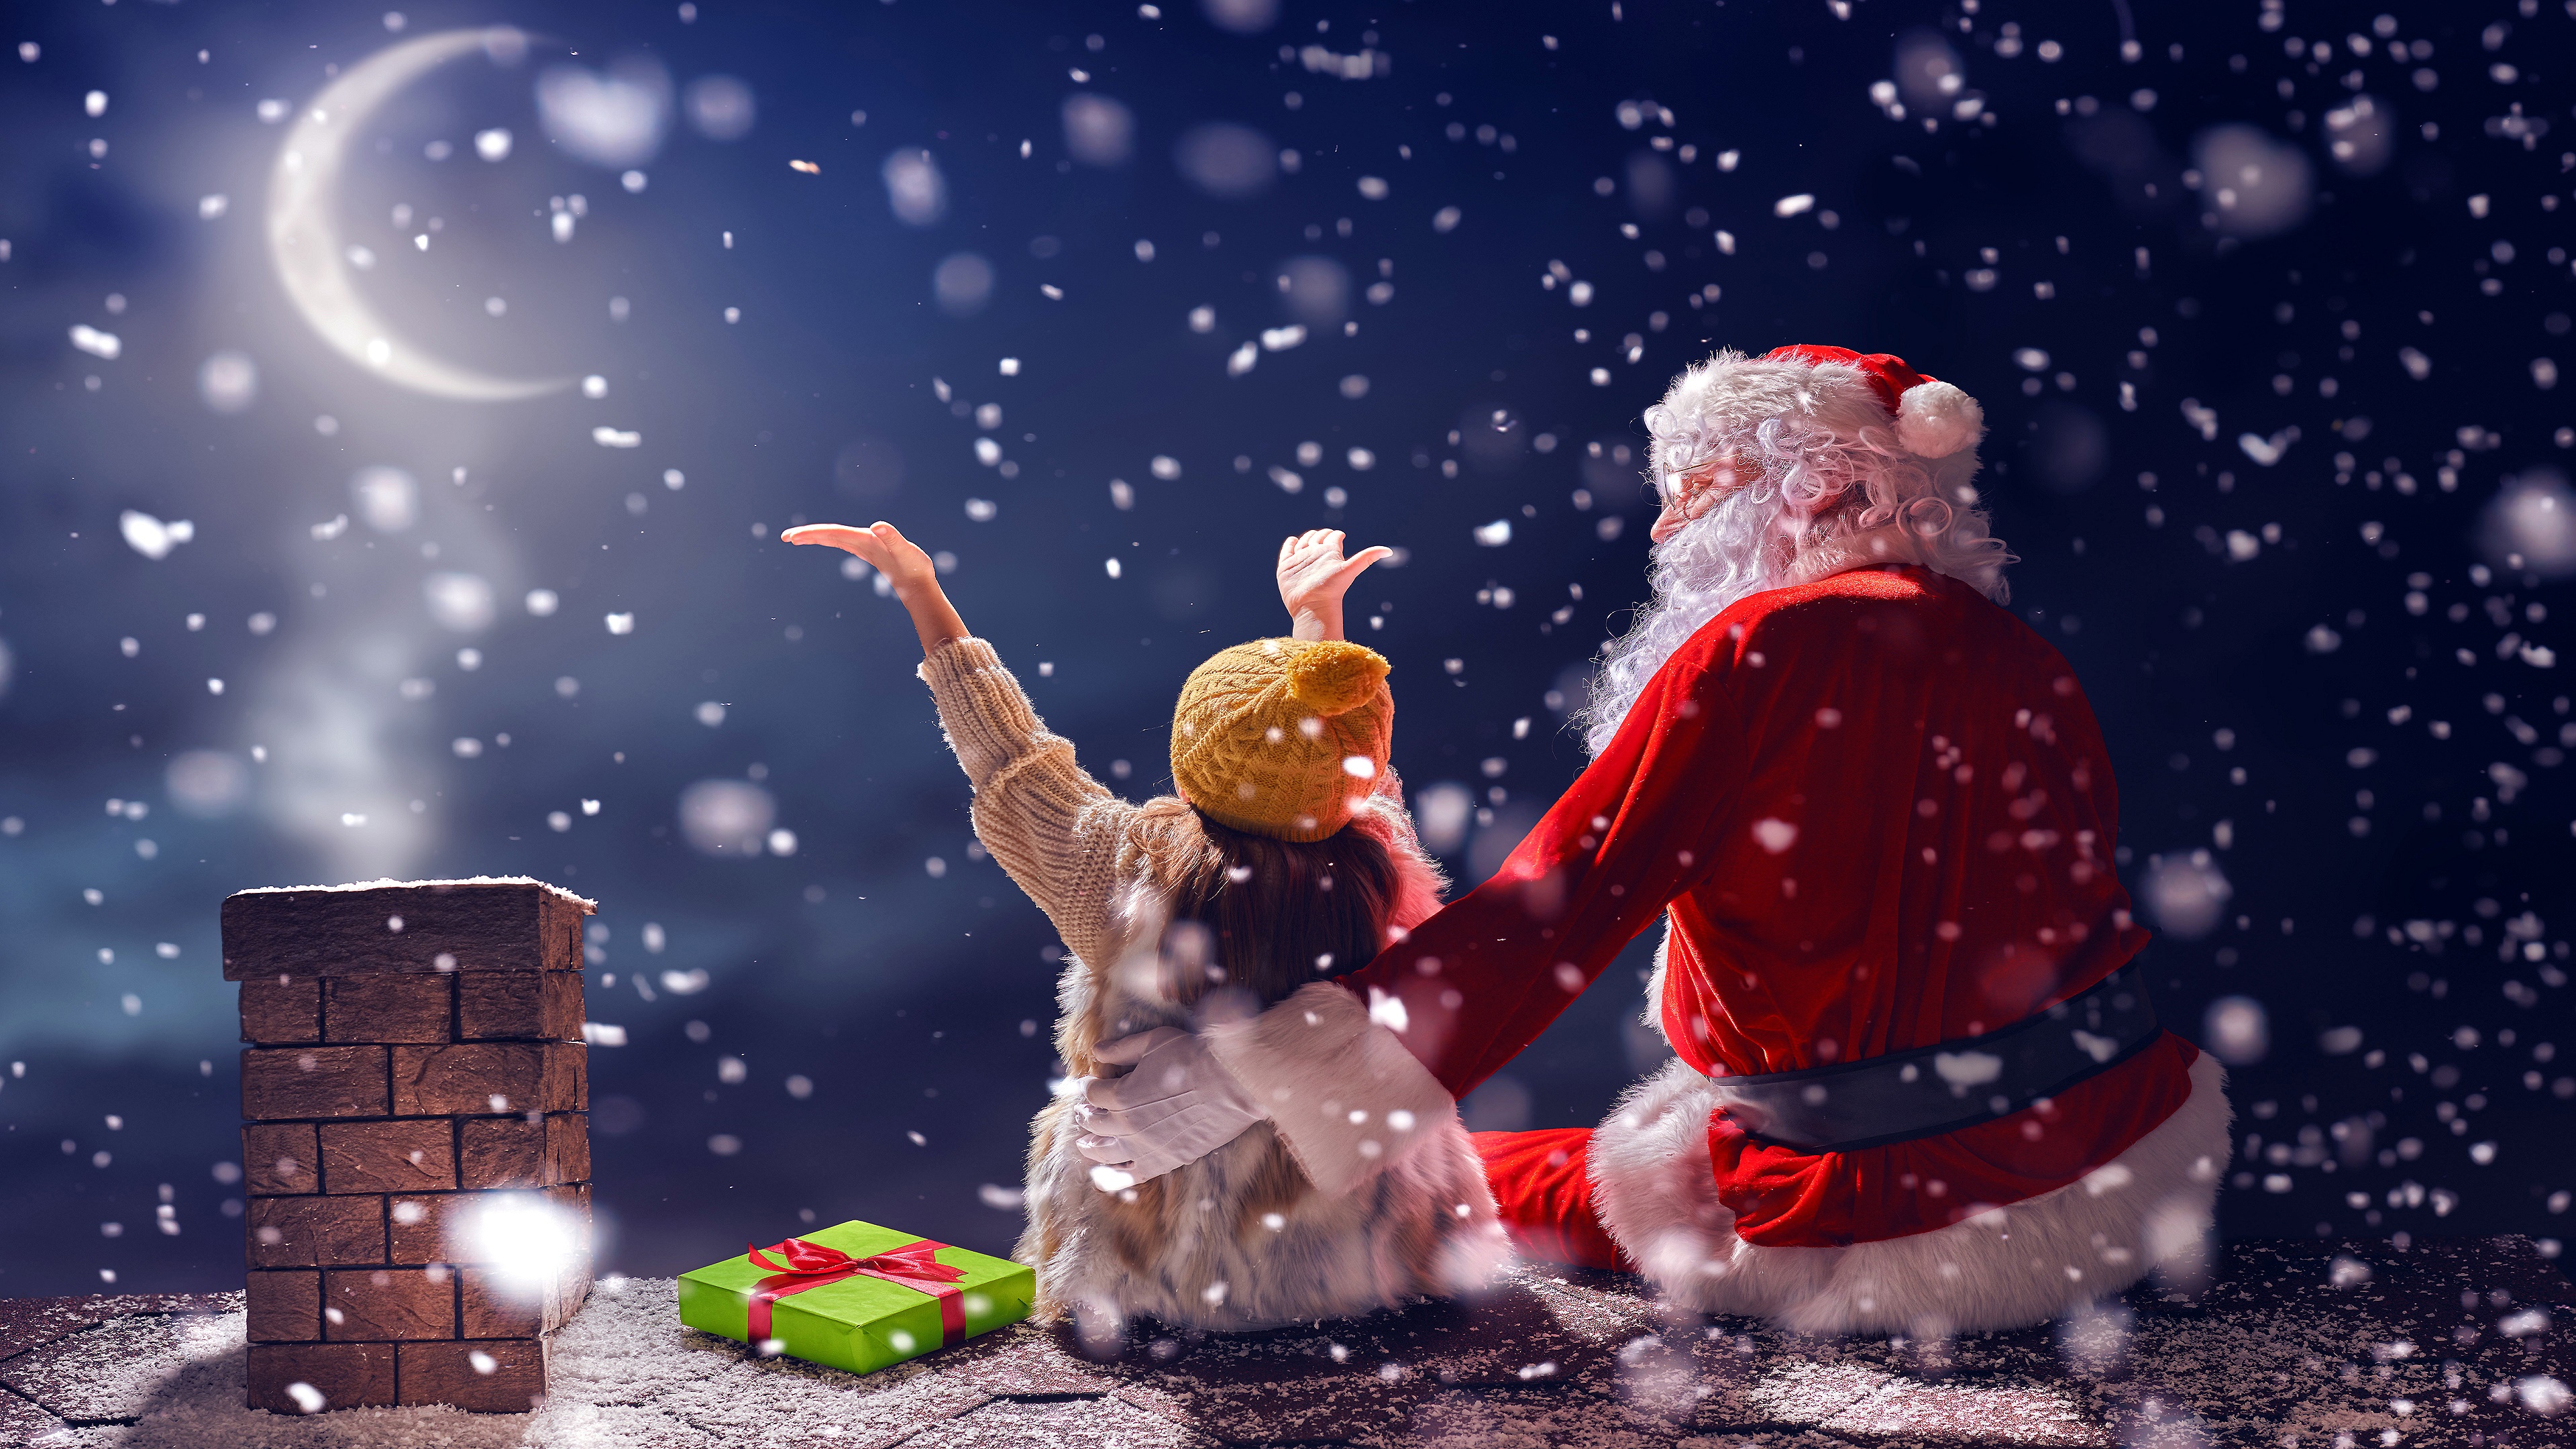 Скачать обои бесплатно Ночь, Рождество, Снегопад, Праздничные, Малышка, Санта картинка на рабочий стол ПК